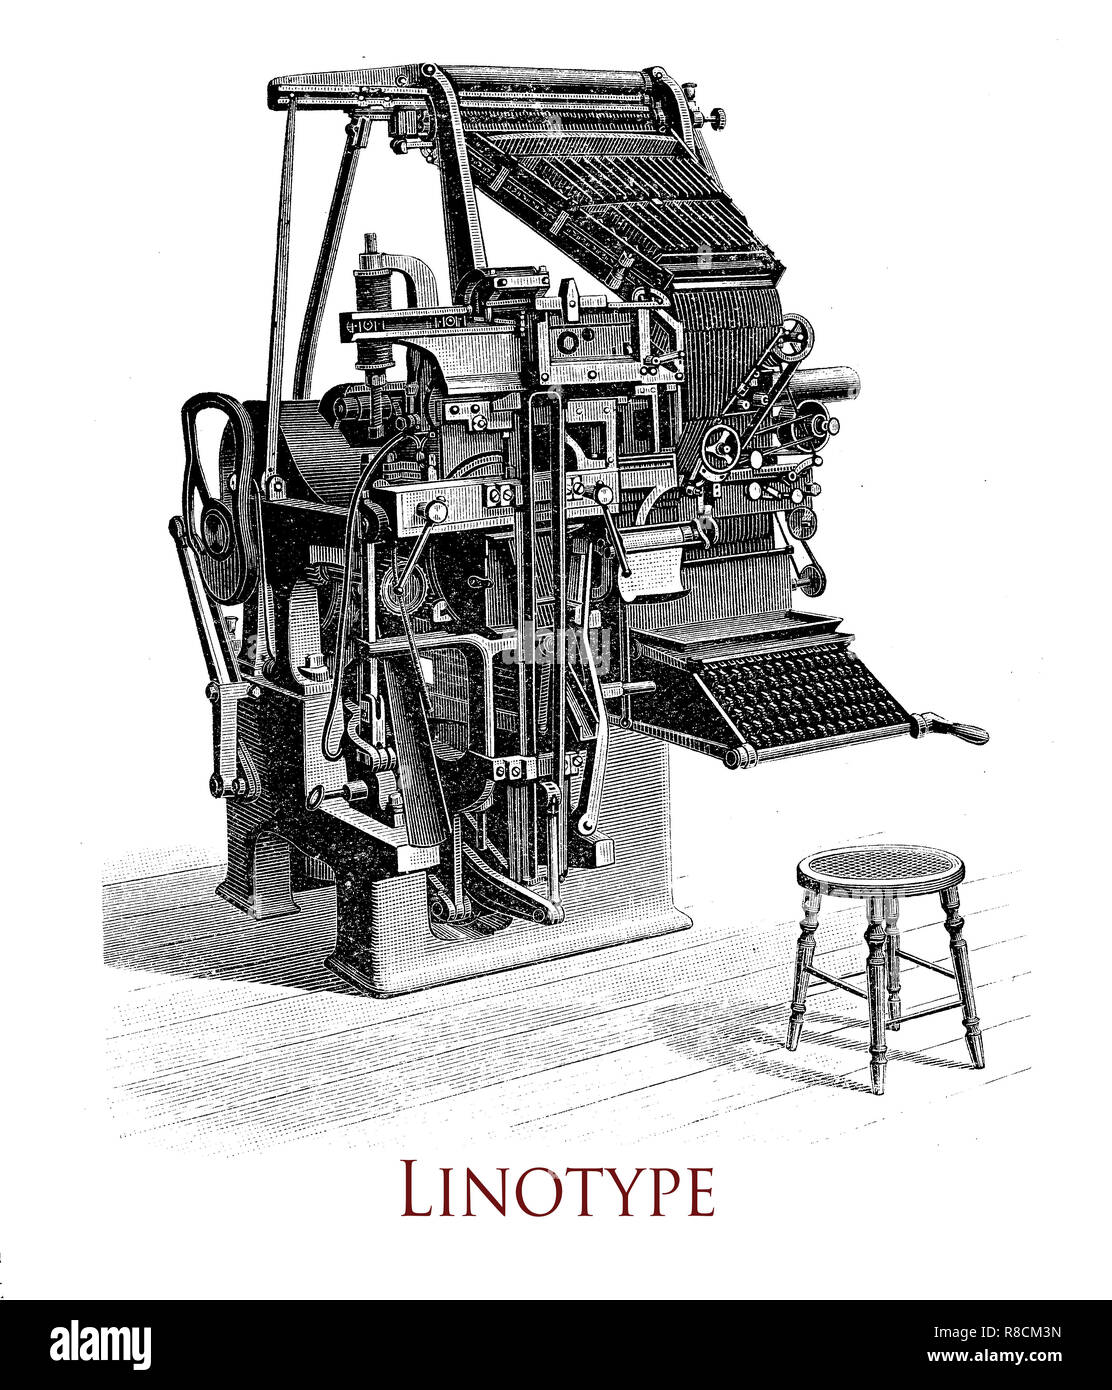 Vintage incisione di Linotype macchina da stampa, si produce un'intera linea di tipo metallico in una volta, significativo miglioramento rispetto al precedente standard di settore del manuale lettera per lettera di typesetting Foto Stock